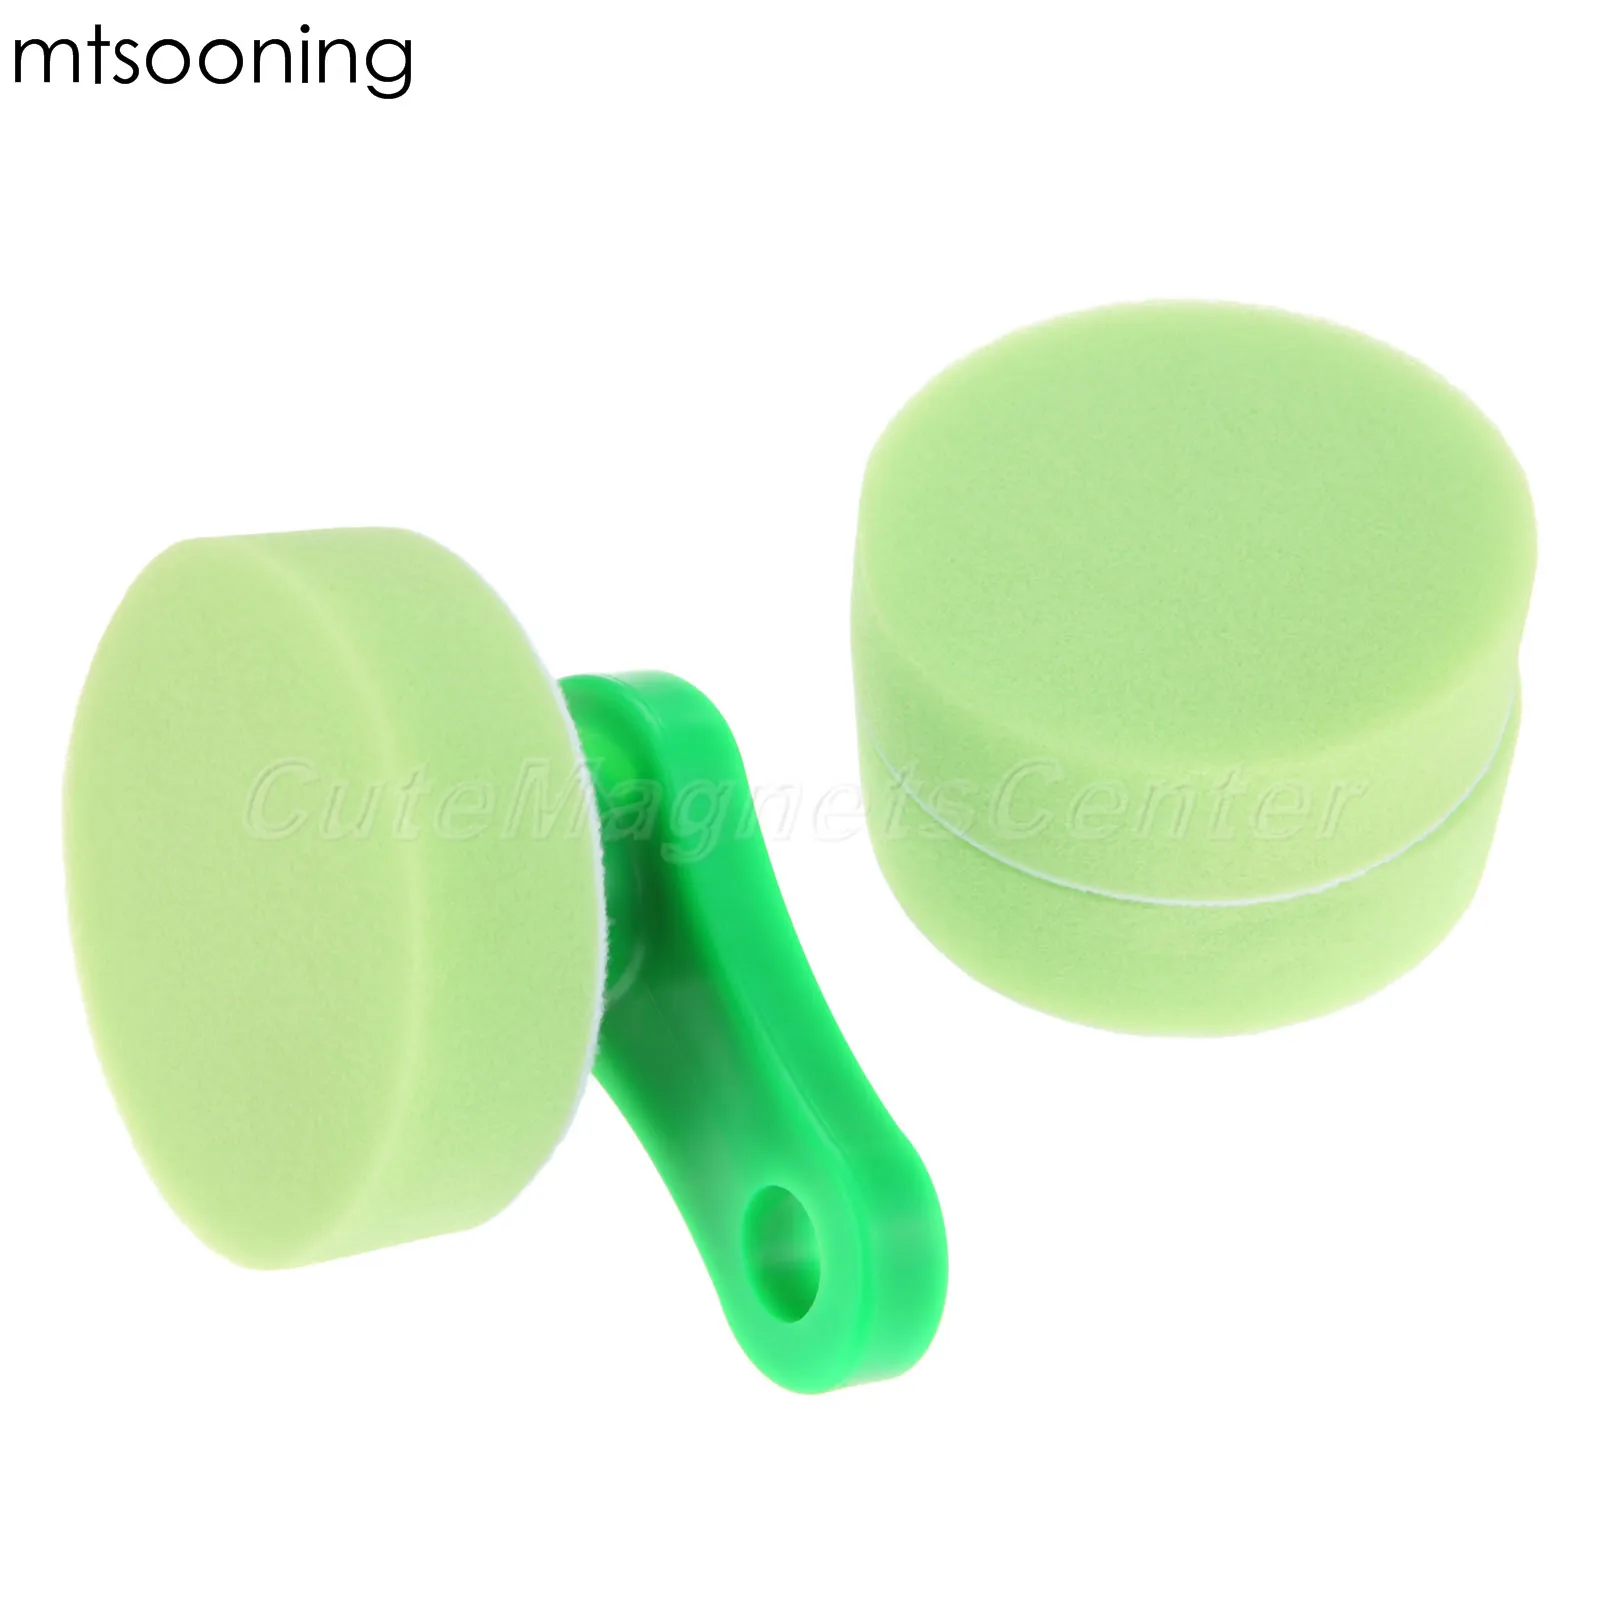 Mtsooning 3 шт. зеленый полировальный воск подушечка-аппликатор набор со съемной ручкой машинная стирка для автомобиля